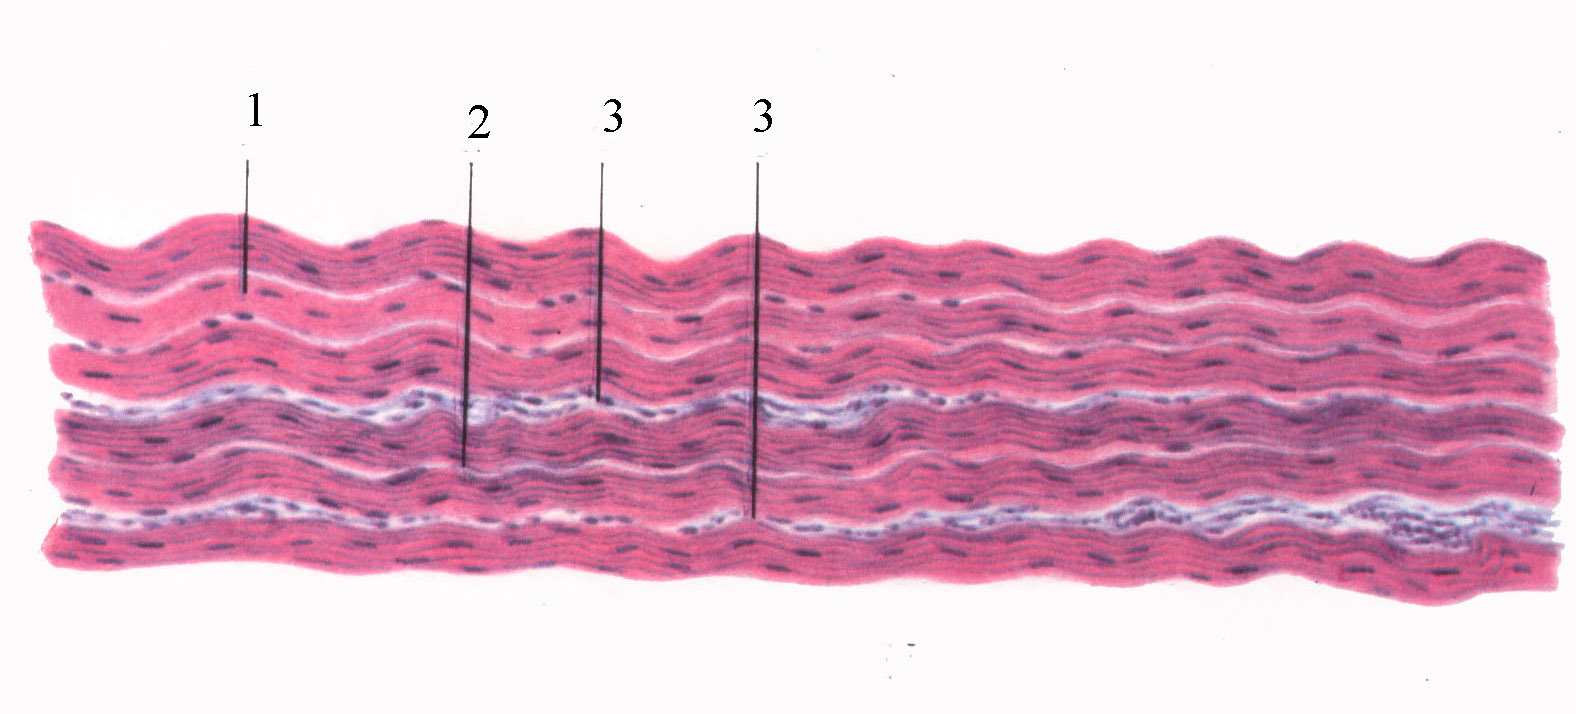 Плотная оформленная ткань сухожилия. Плотная волокнистая соединительная ткань гистология. Плотная волокнистая оформленная соединительная ткань гистология. Плотная оформленная волокнистая соединительная ткань сухожилие. Оформленная волокнистая соединительная ткань гистология.